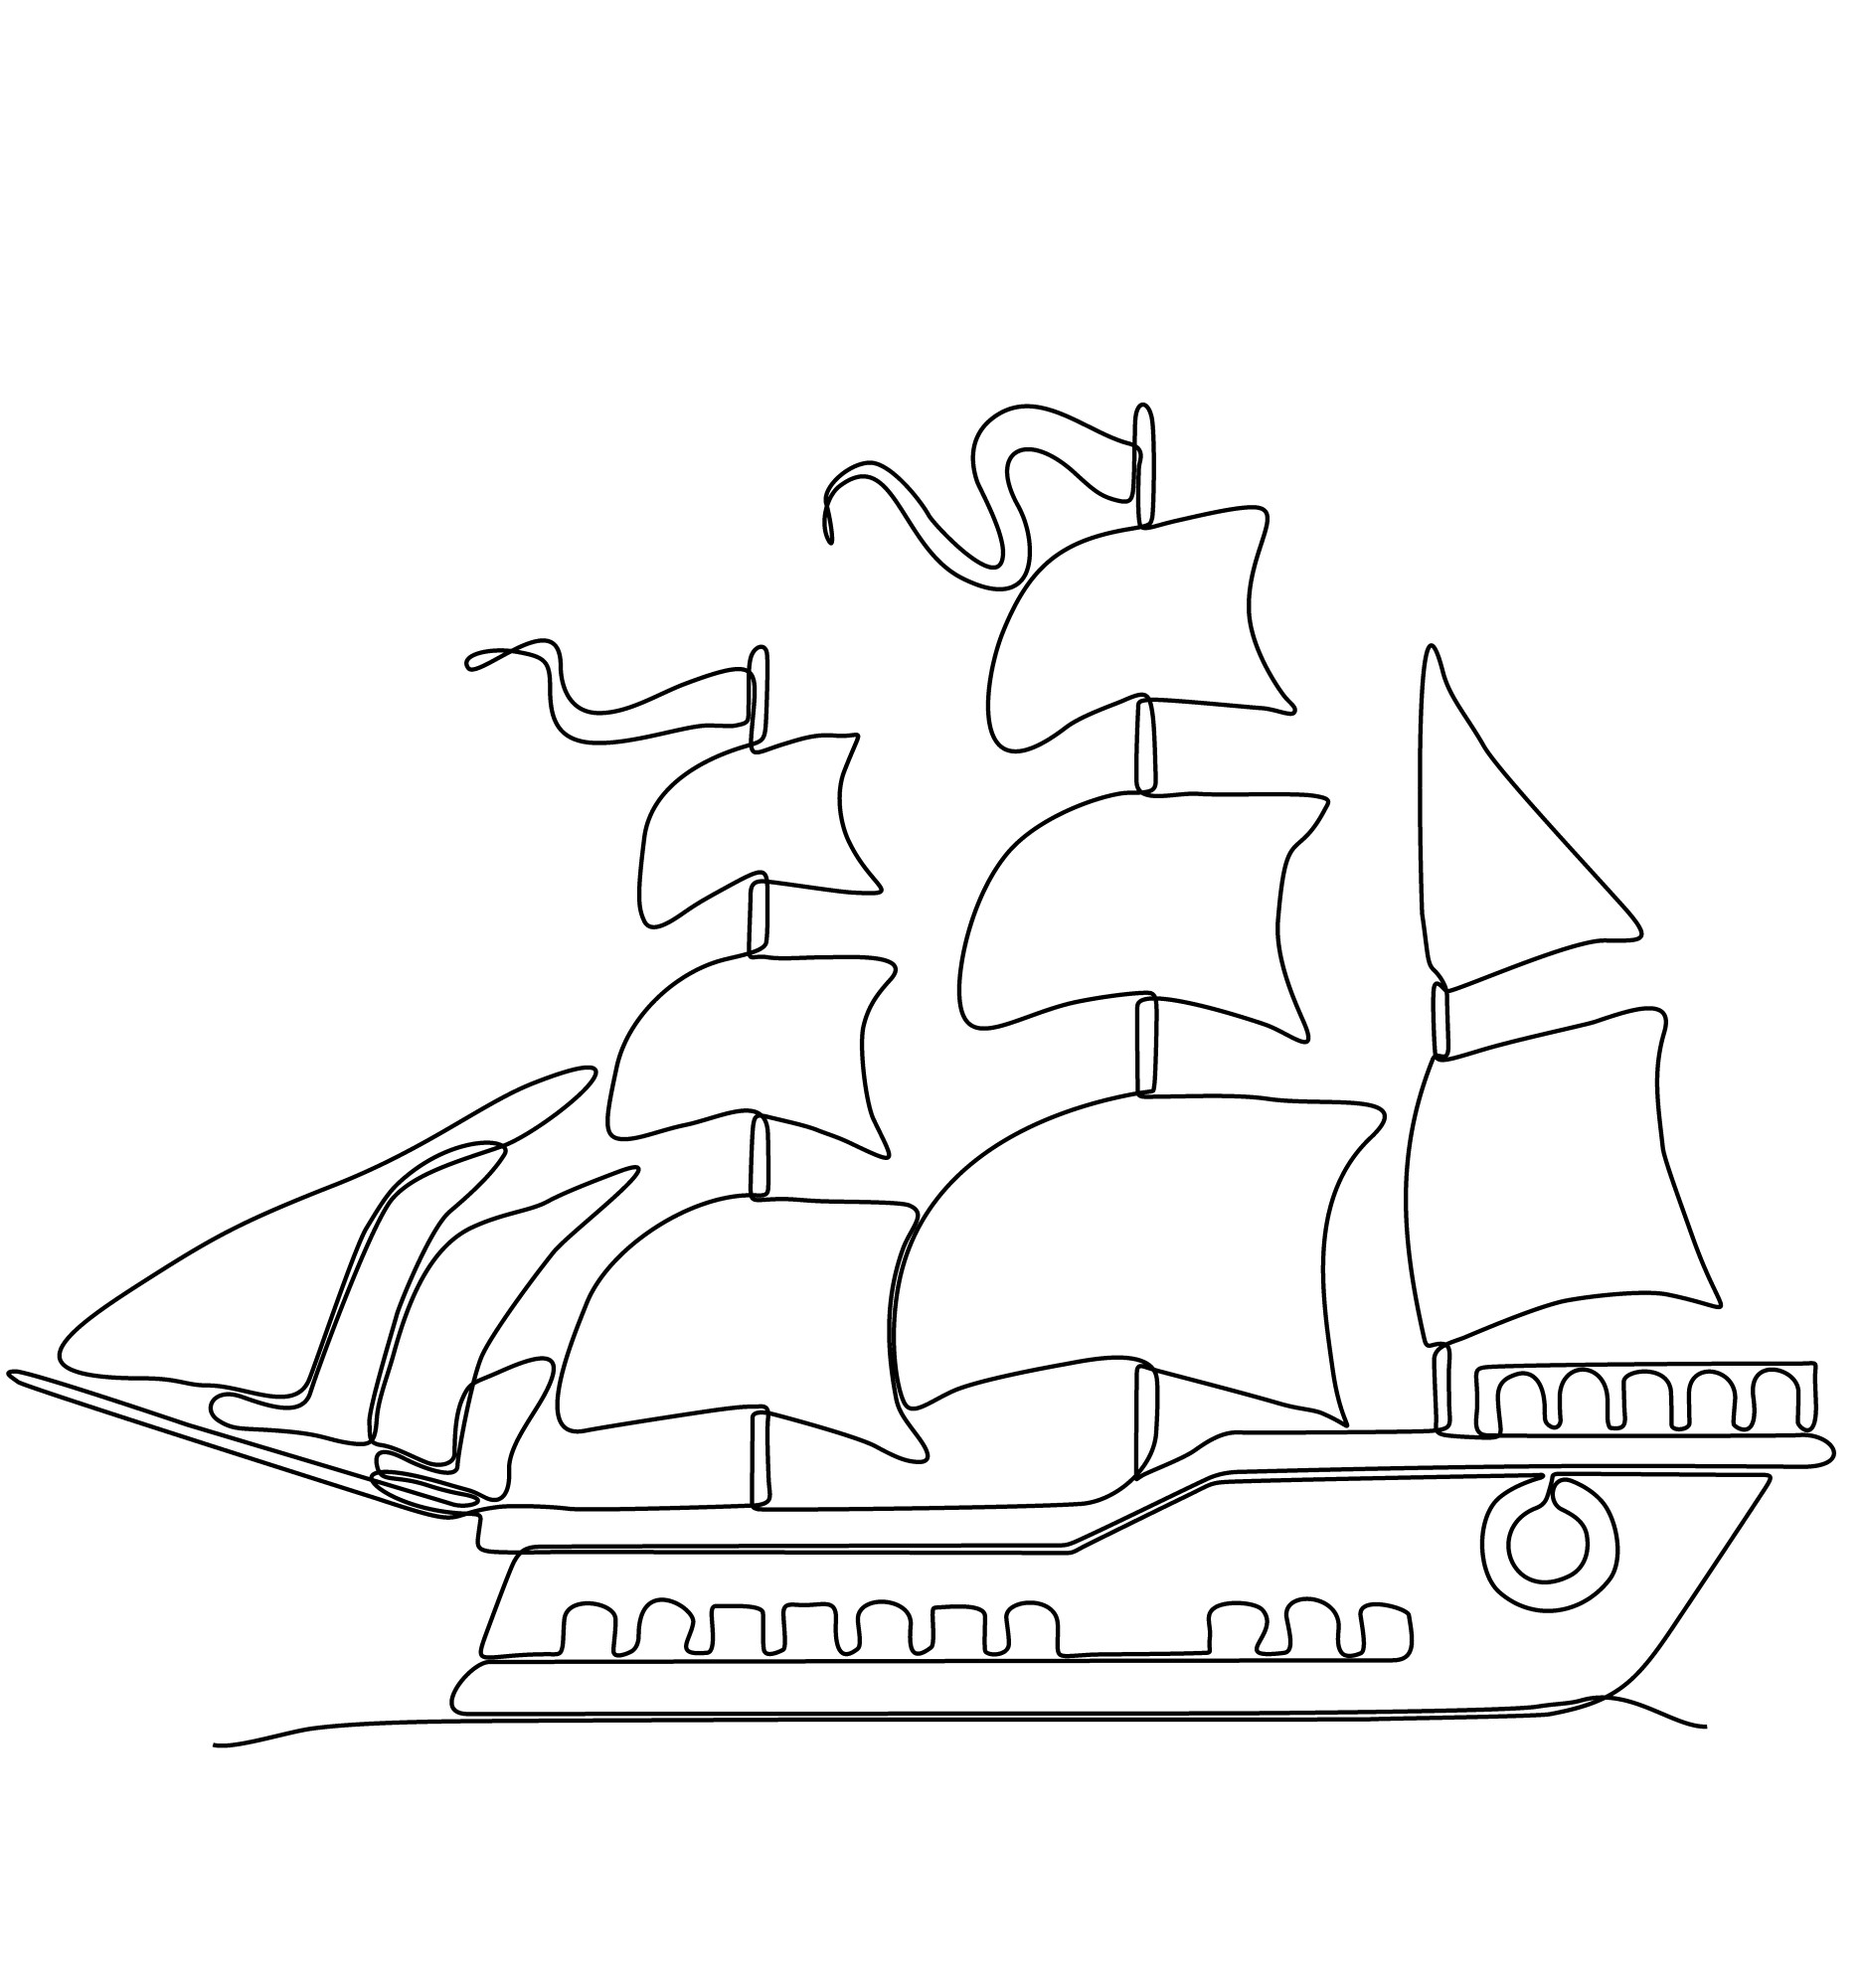 Раскраска для детей: рисунок корабль с парусами